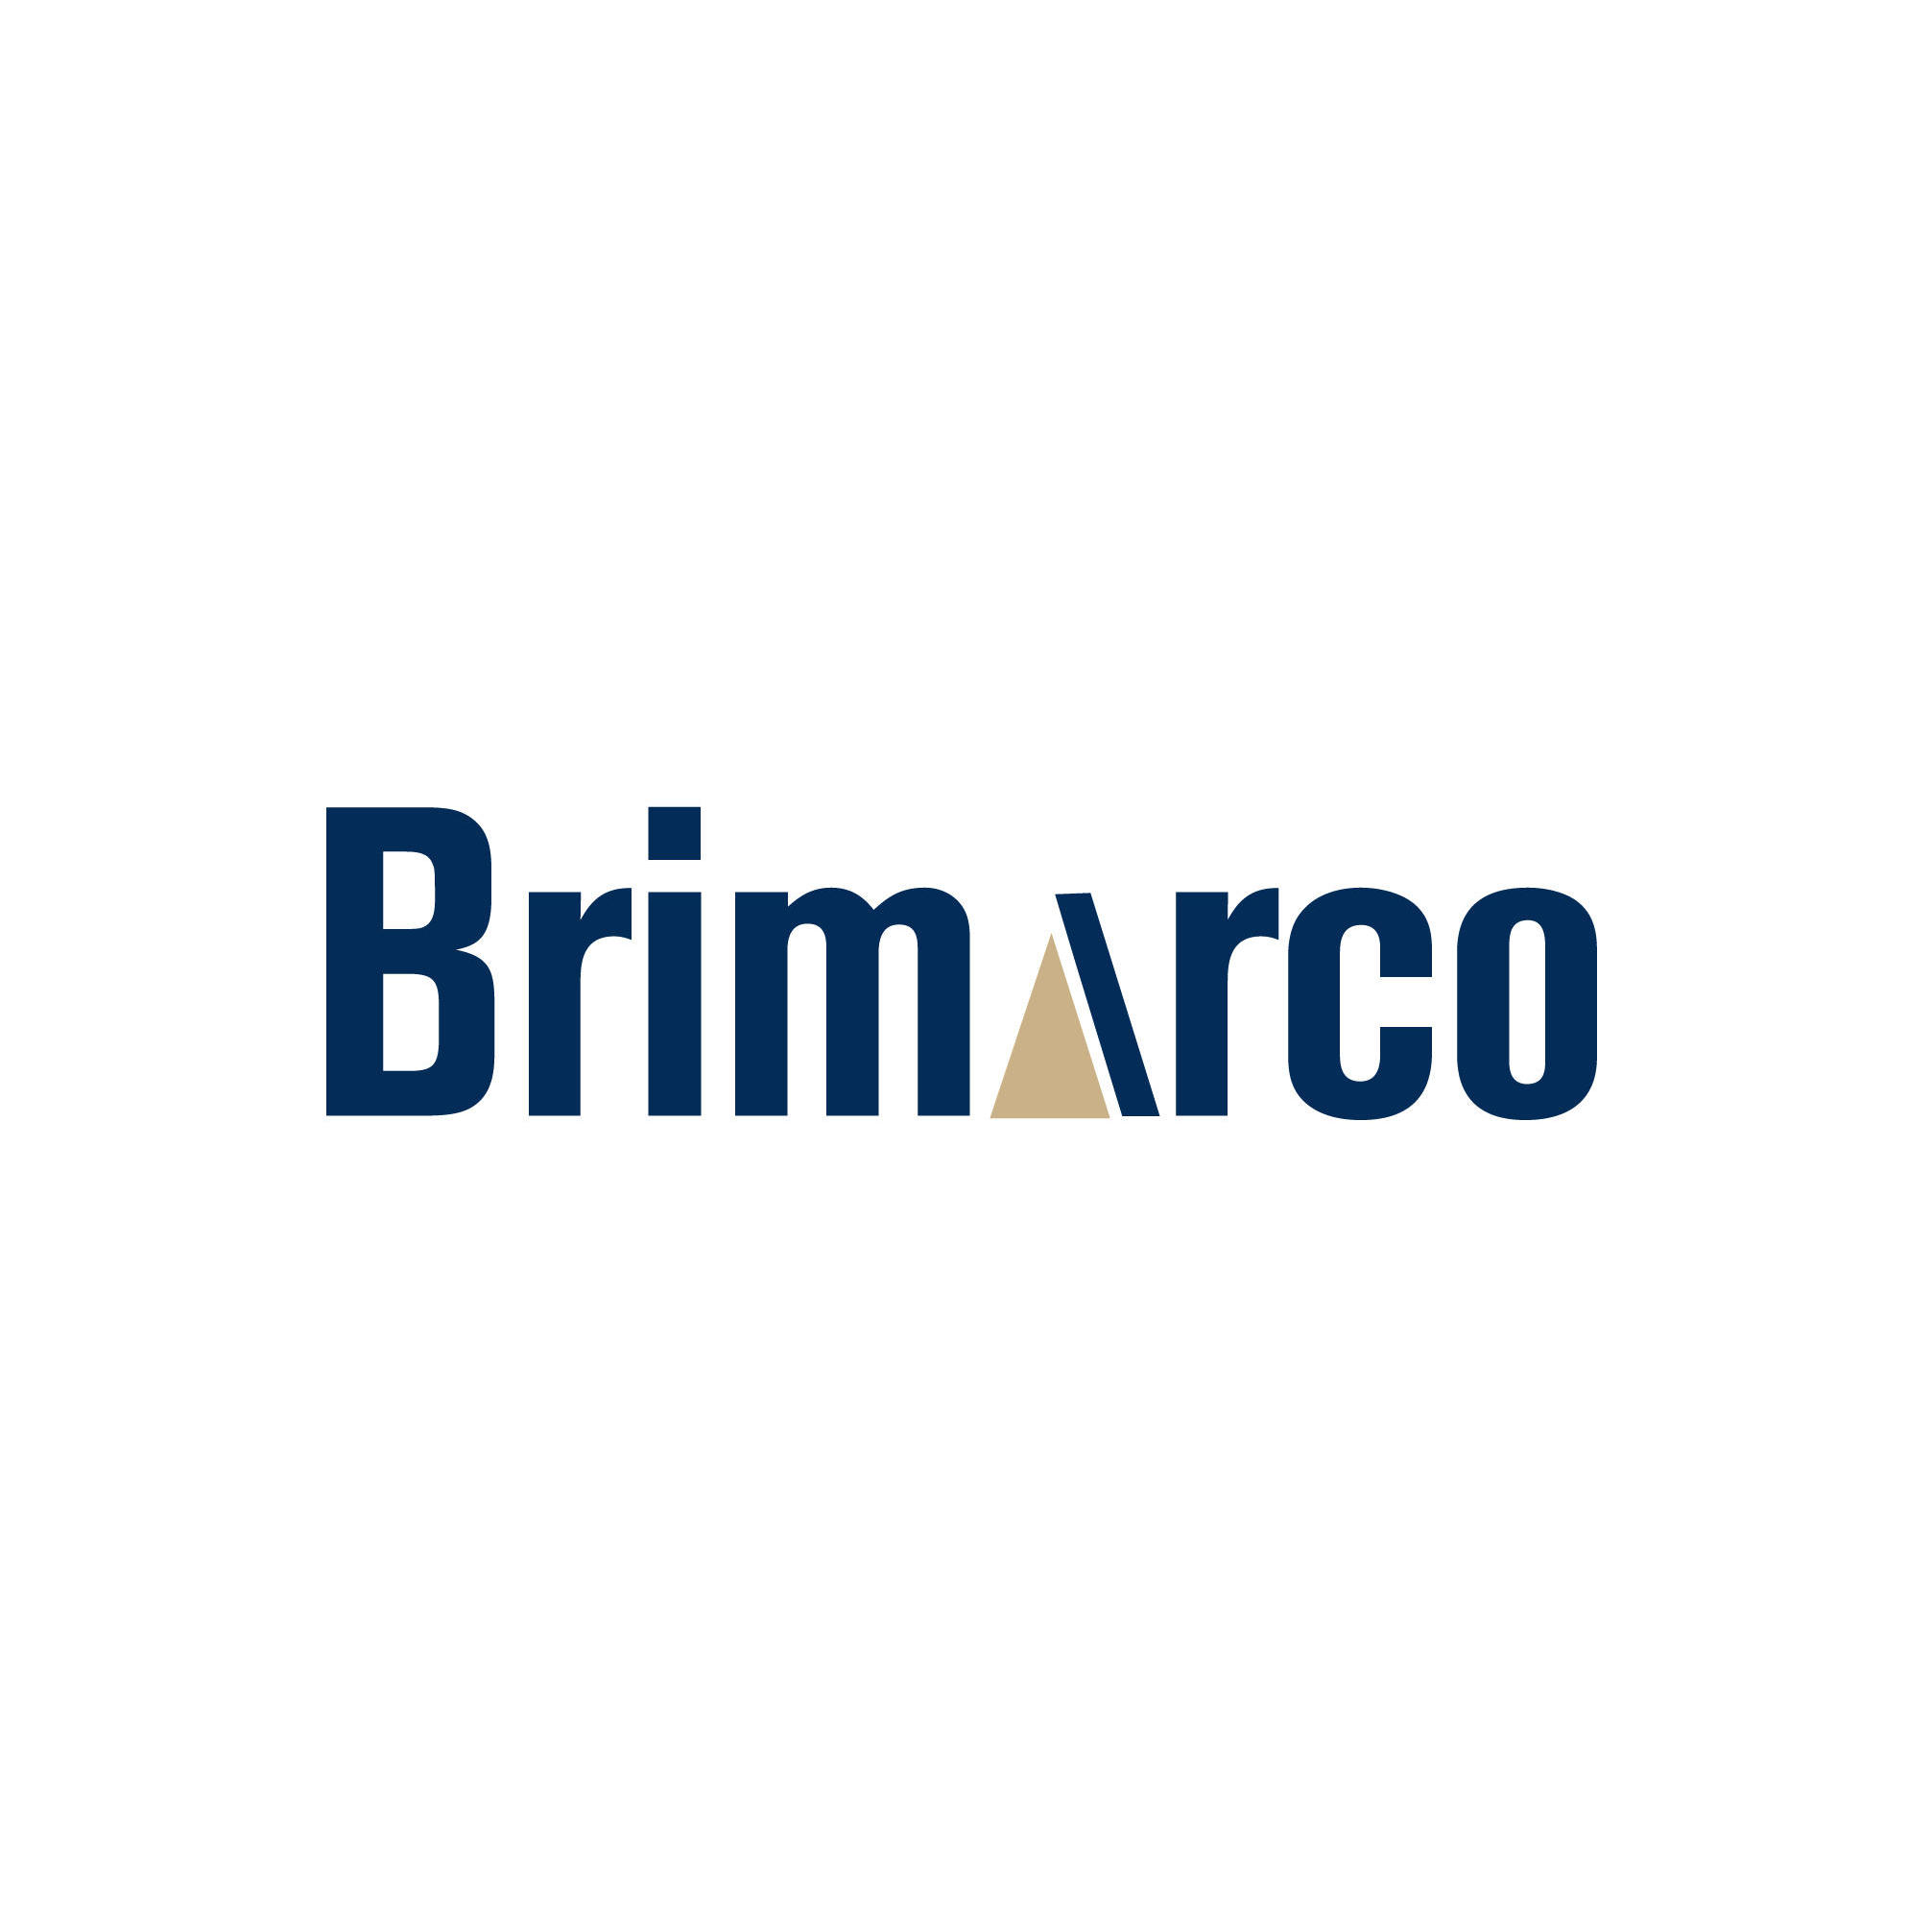 Brimarco Logo